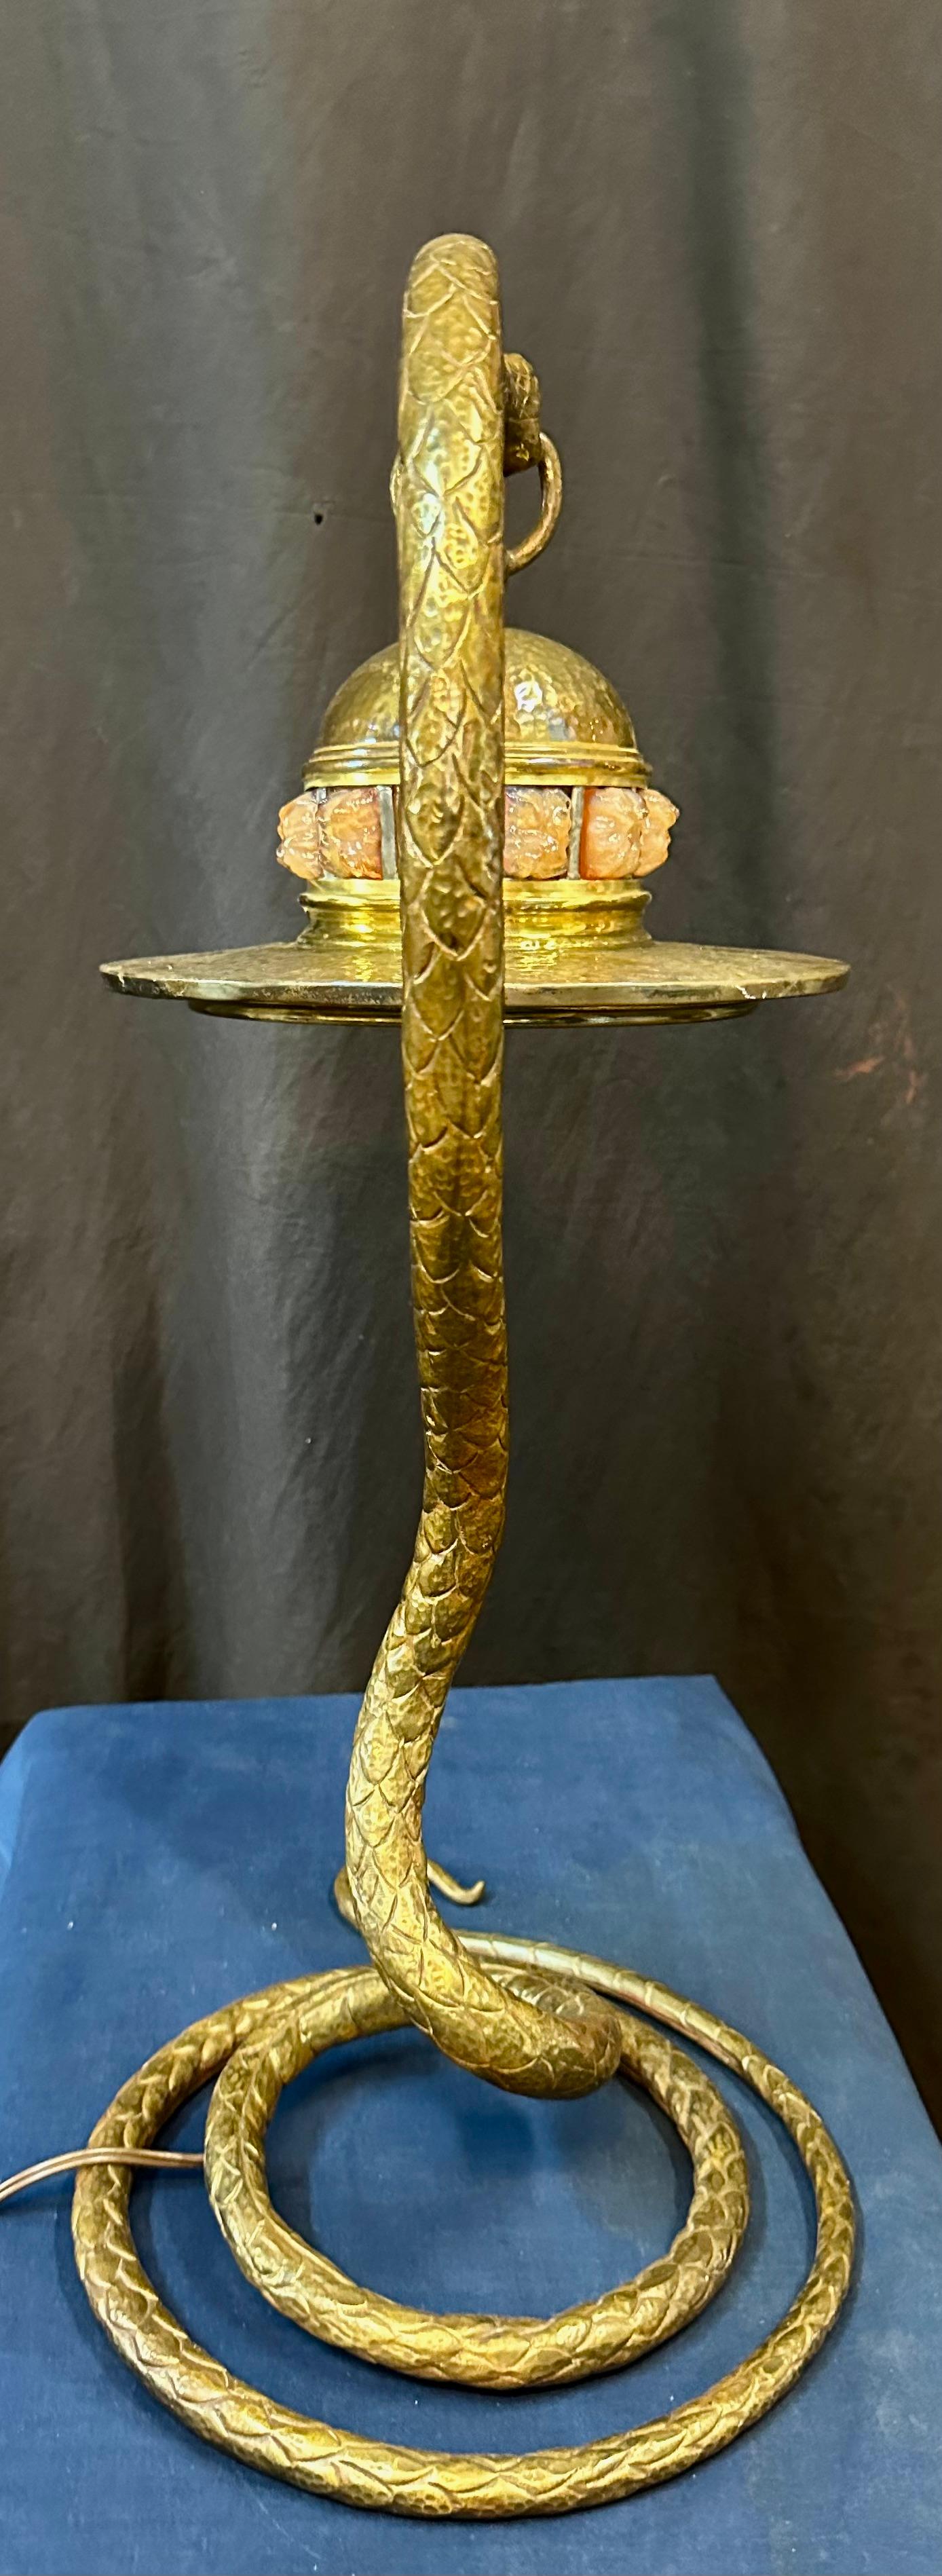 snake table lamp